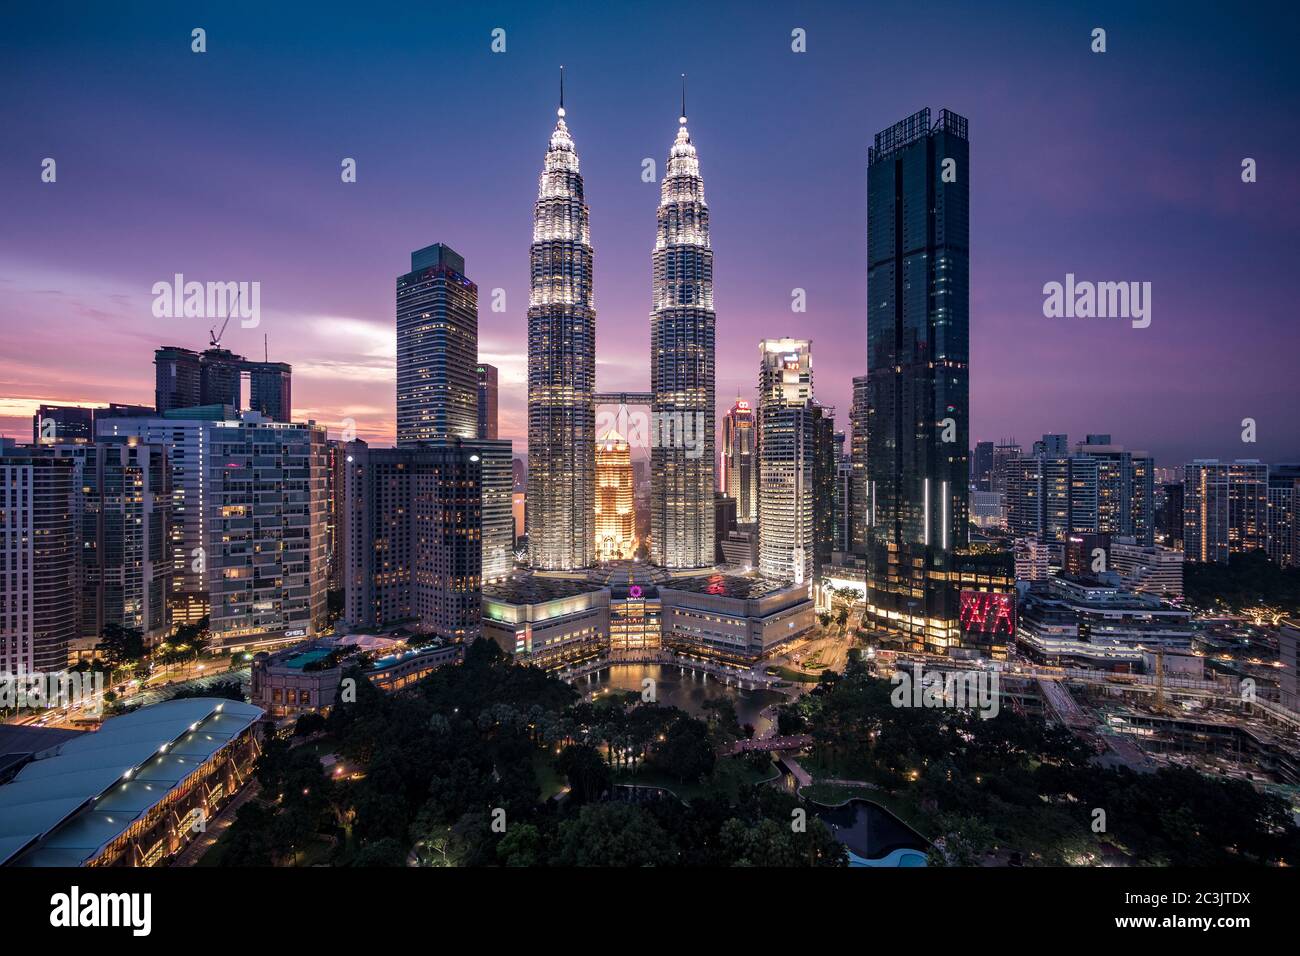 Centre-ville de Kuala Lumpur, complexe KLCC, dont le monument national Petronas Twin Towers au crépuscule à Kuala Lumpur, Malaisie. Banque D'Images